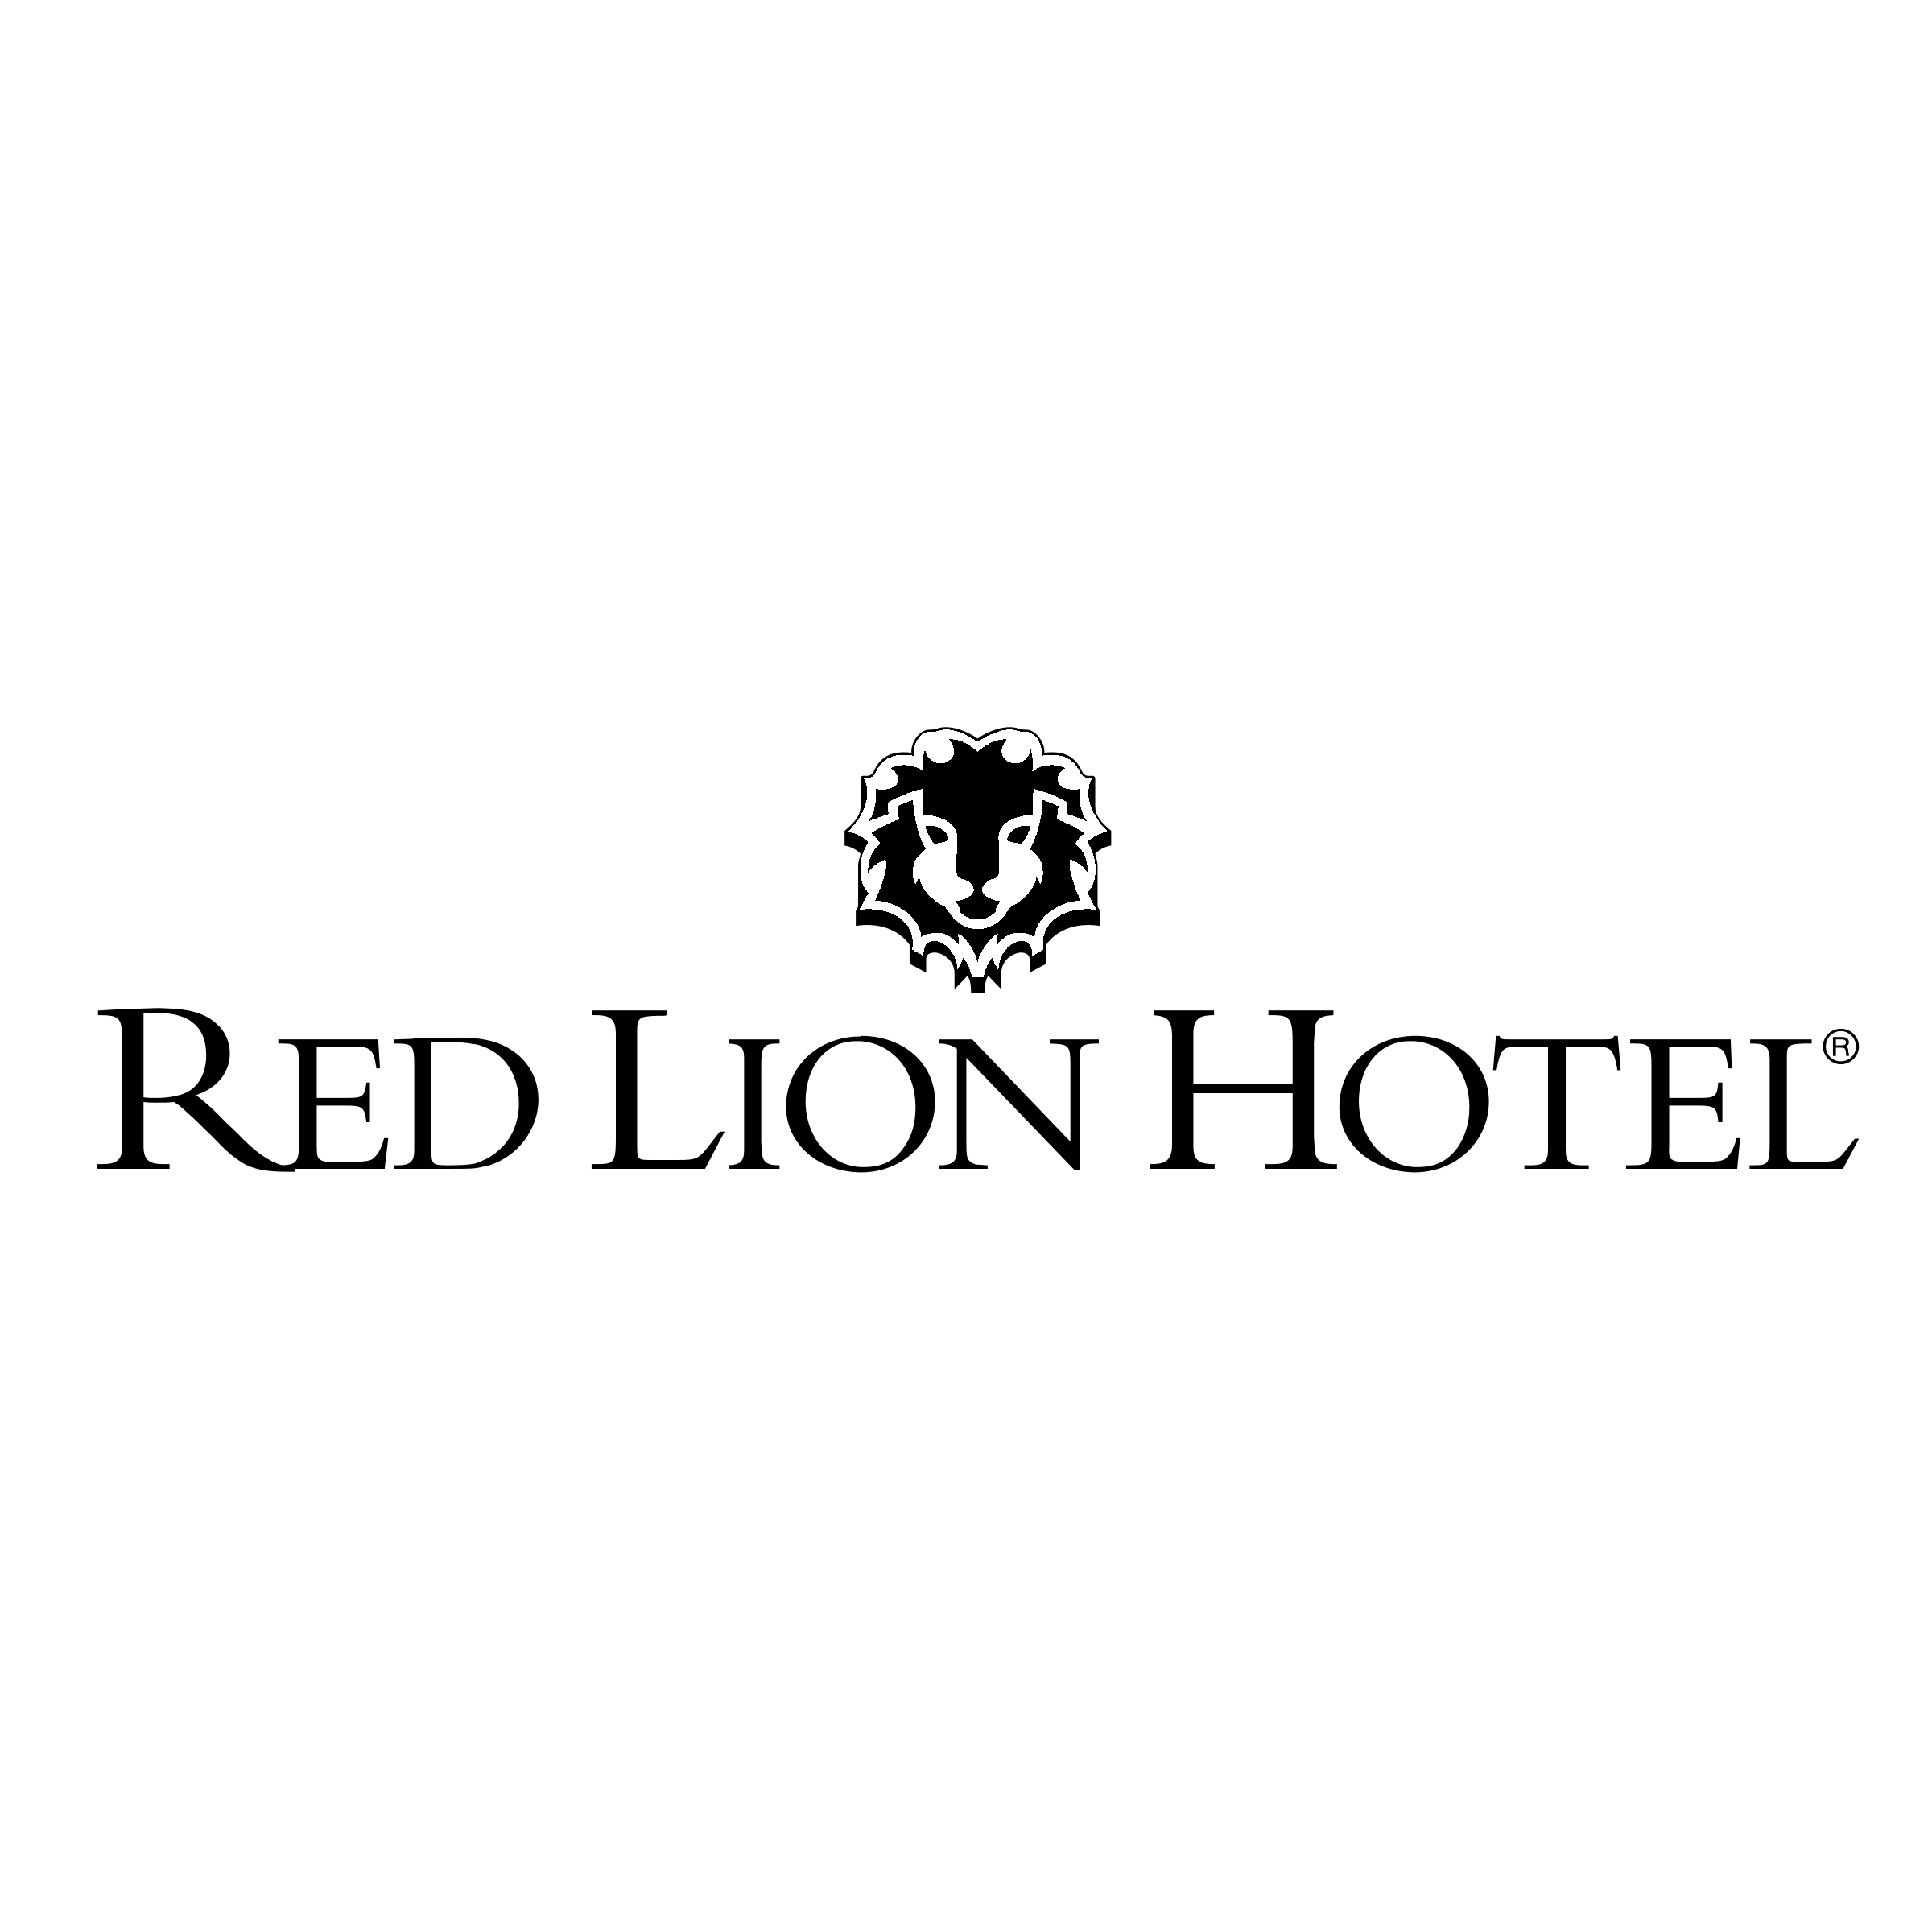 Black Red Lion Hotel Logo - Red Lion Hotel Logo PNG Transparent & SVG Vector - Freebie Supply